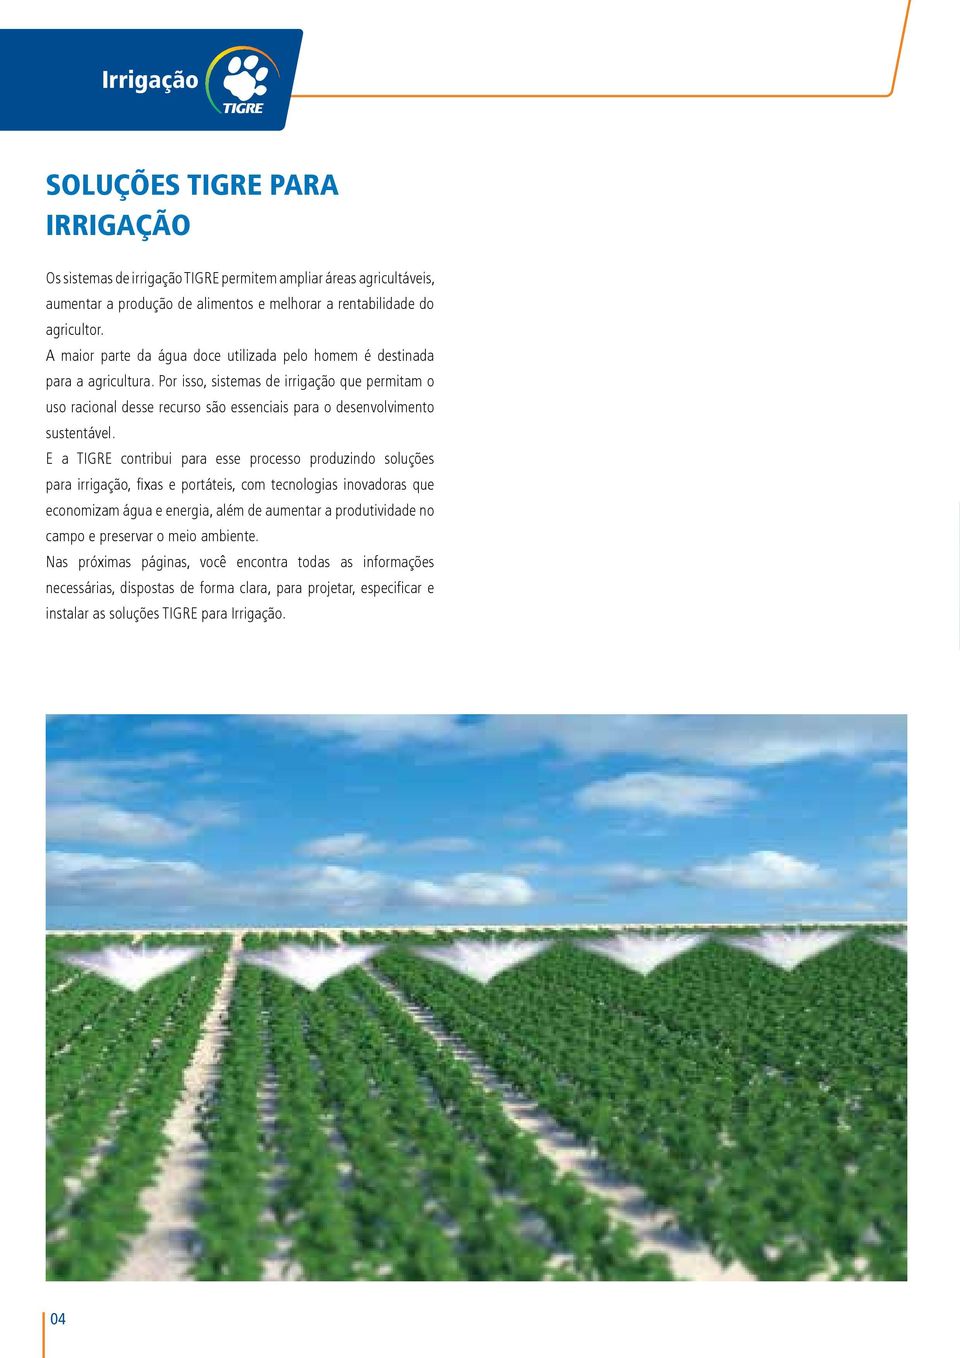 Por isso, sistemas de irrigação que permitam o uso racional desse recurso são essenciais para o desenvolvimento sustentável.